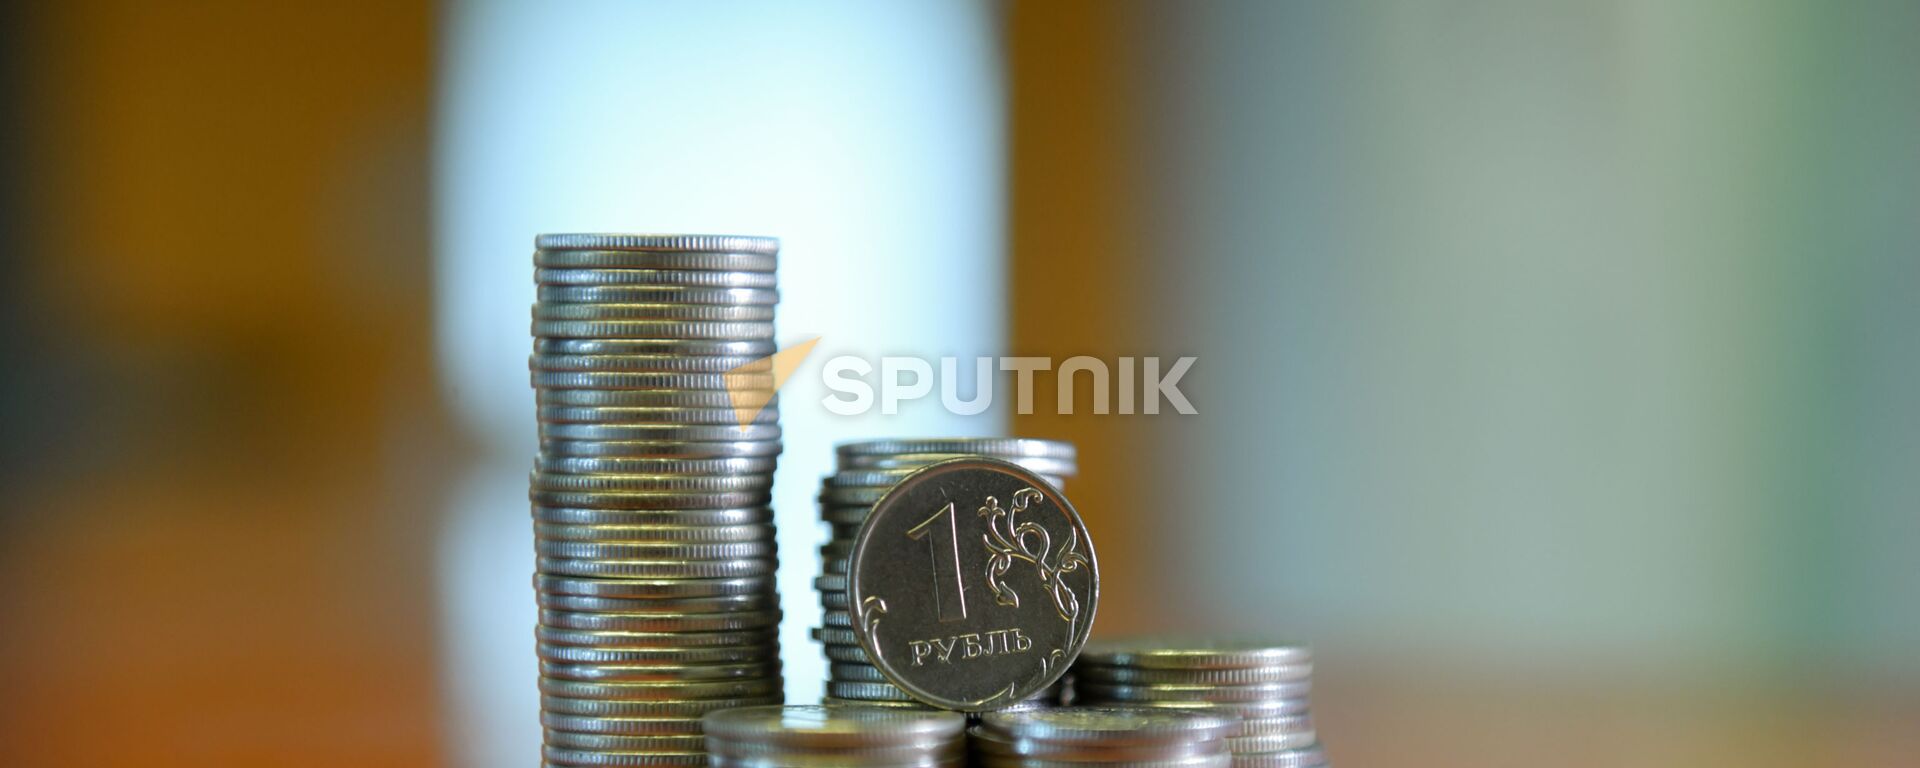 Монета номиналом один рубль  - Sputnik Абхазия, 1920, 18.10.2021